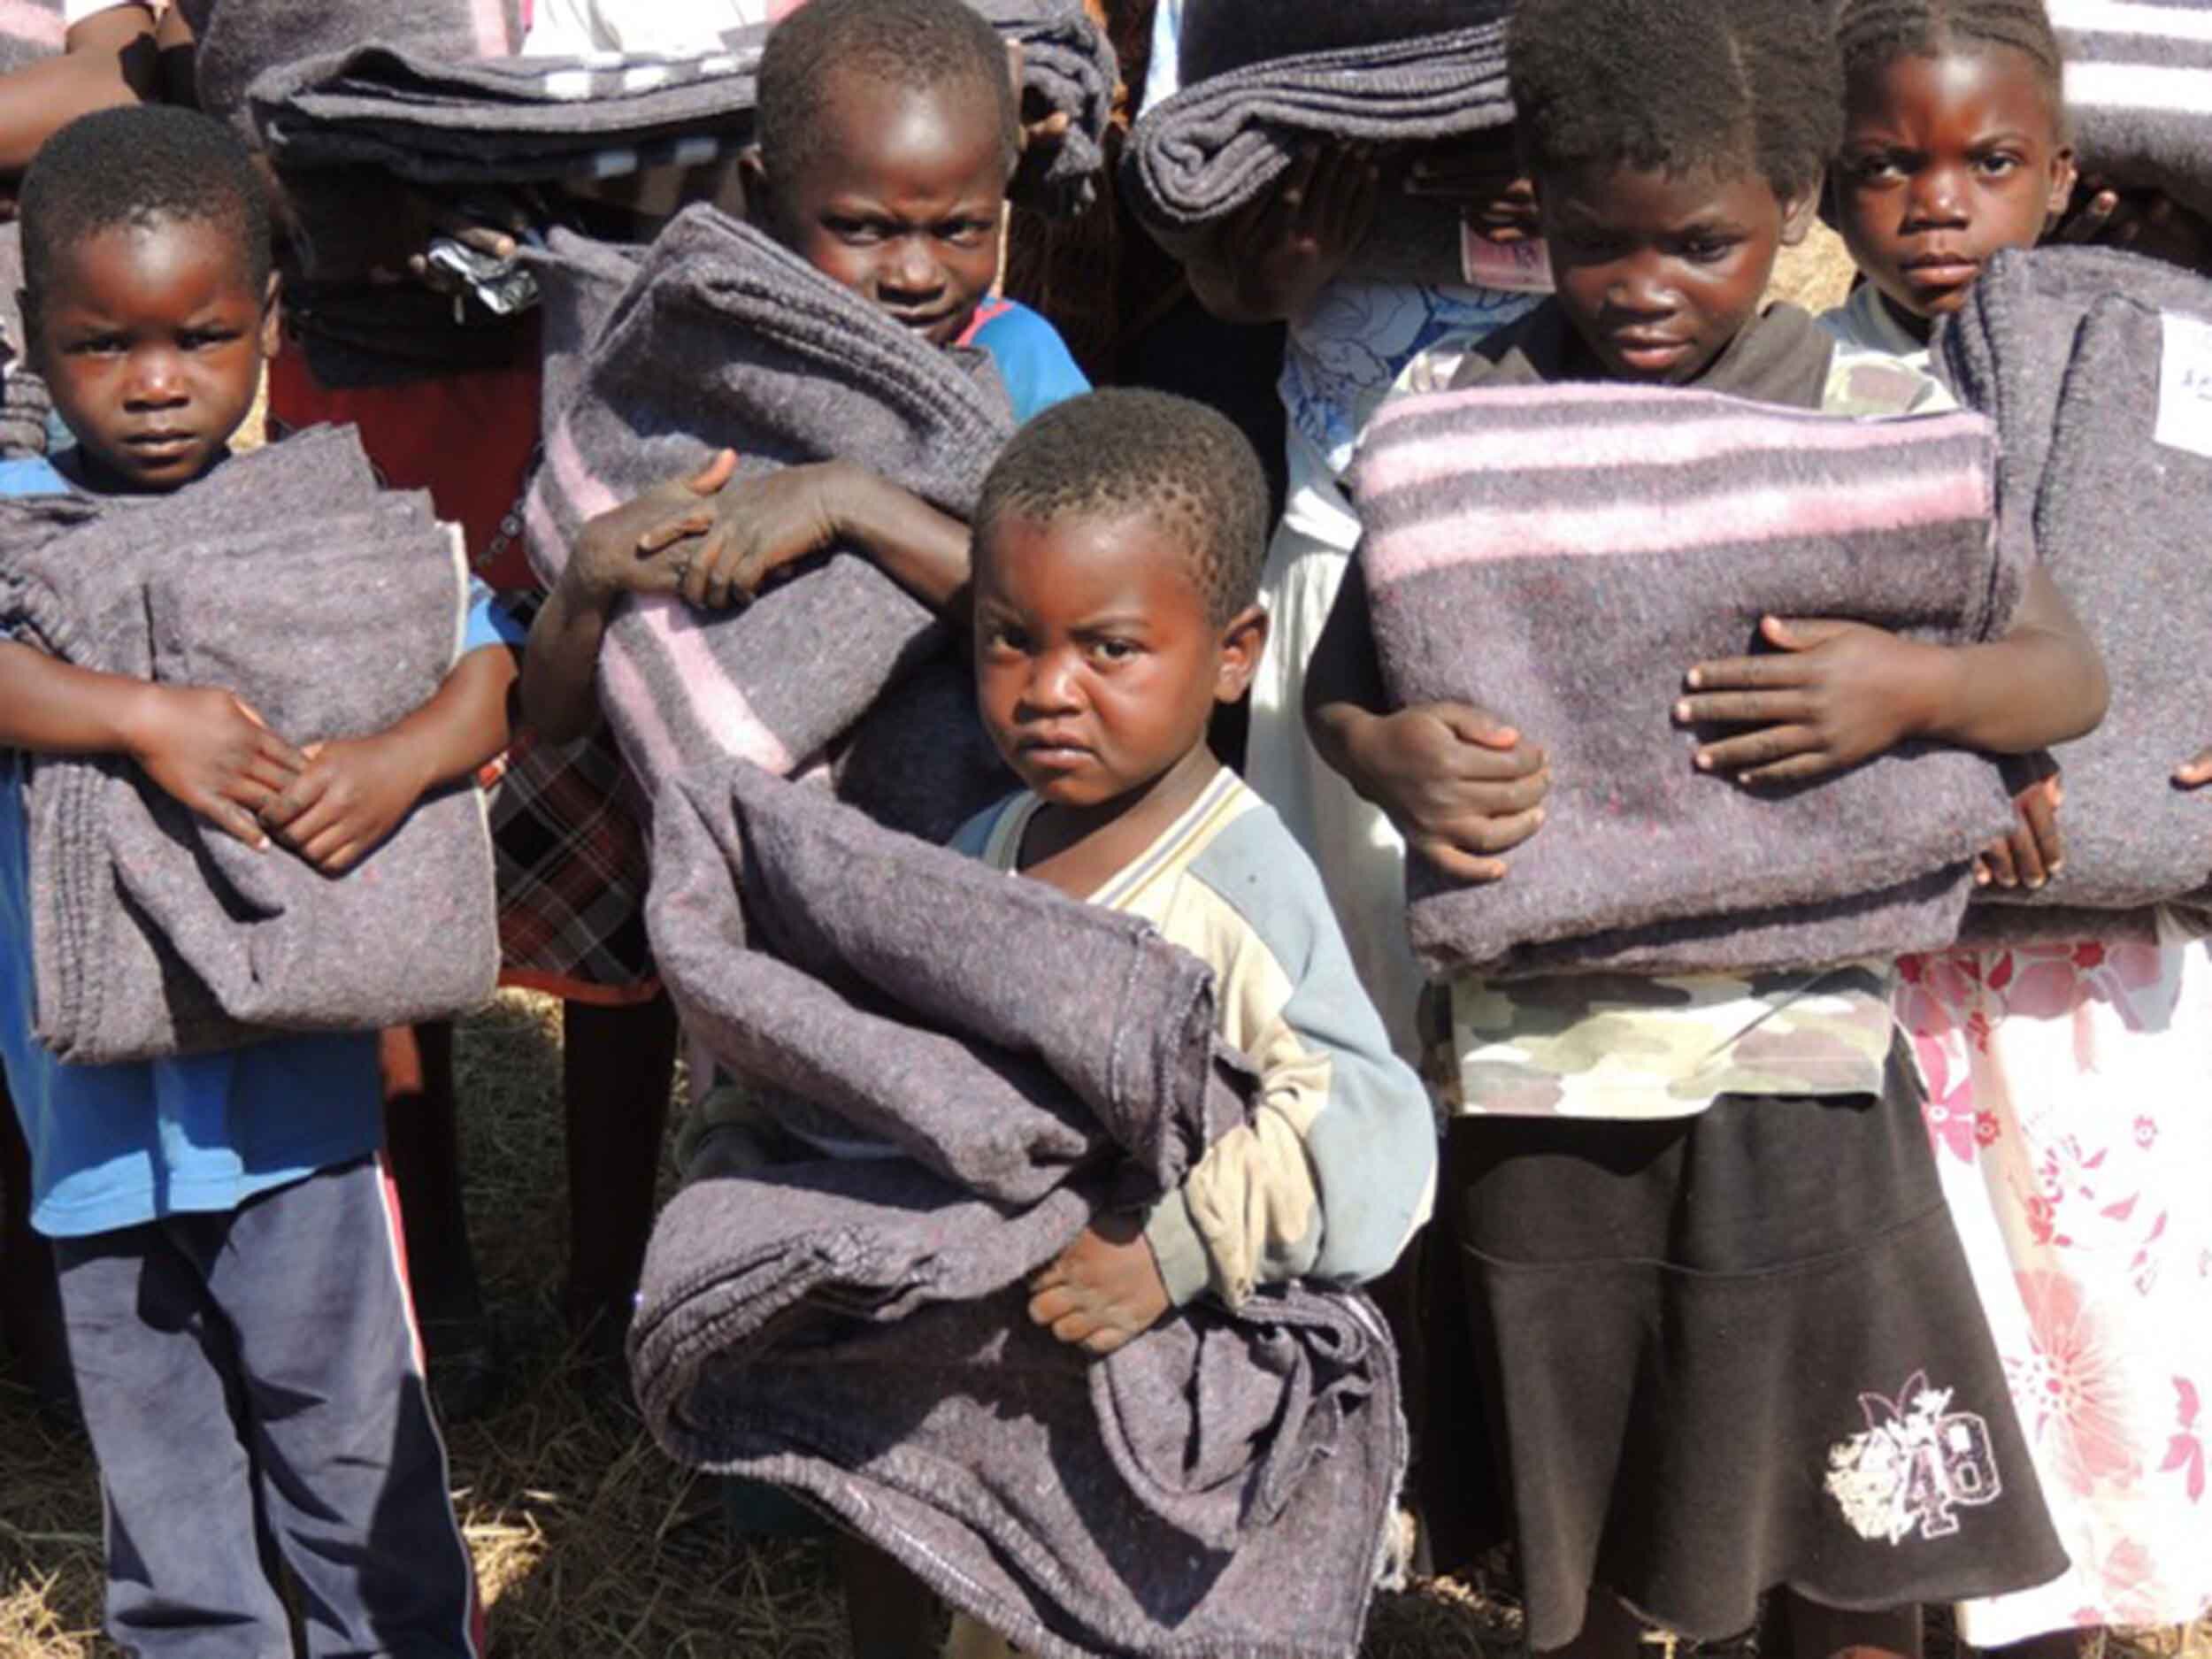 okb dhuna ndaj femijeve mbetet nje realitet i perditshem ne zambi